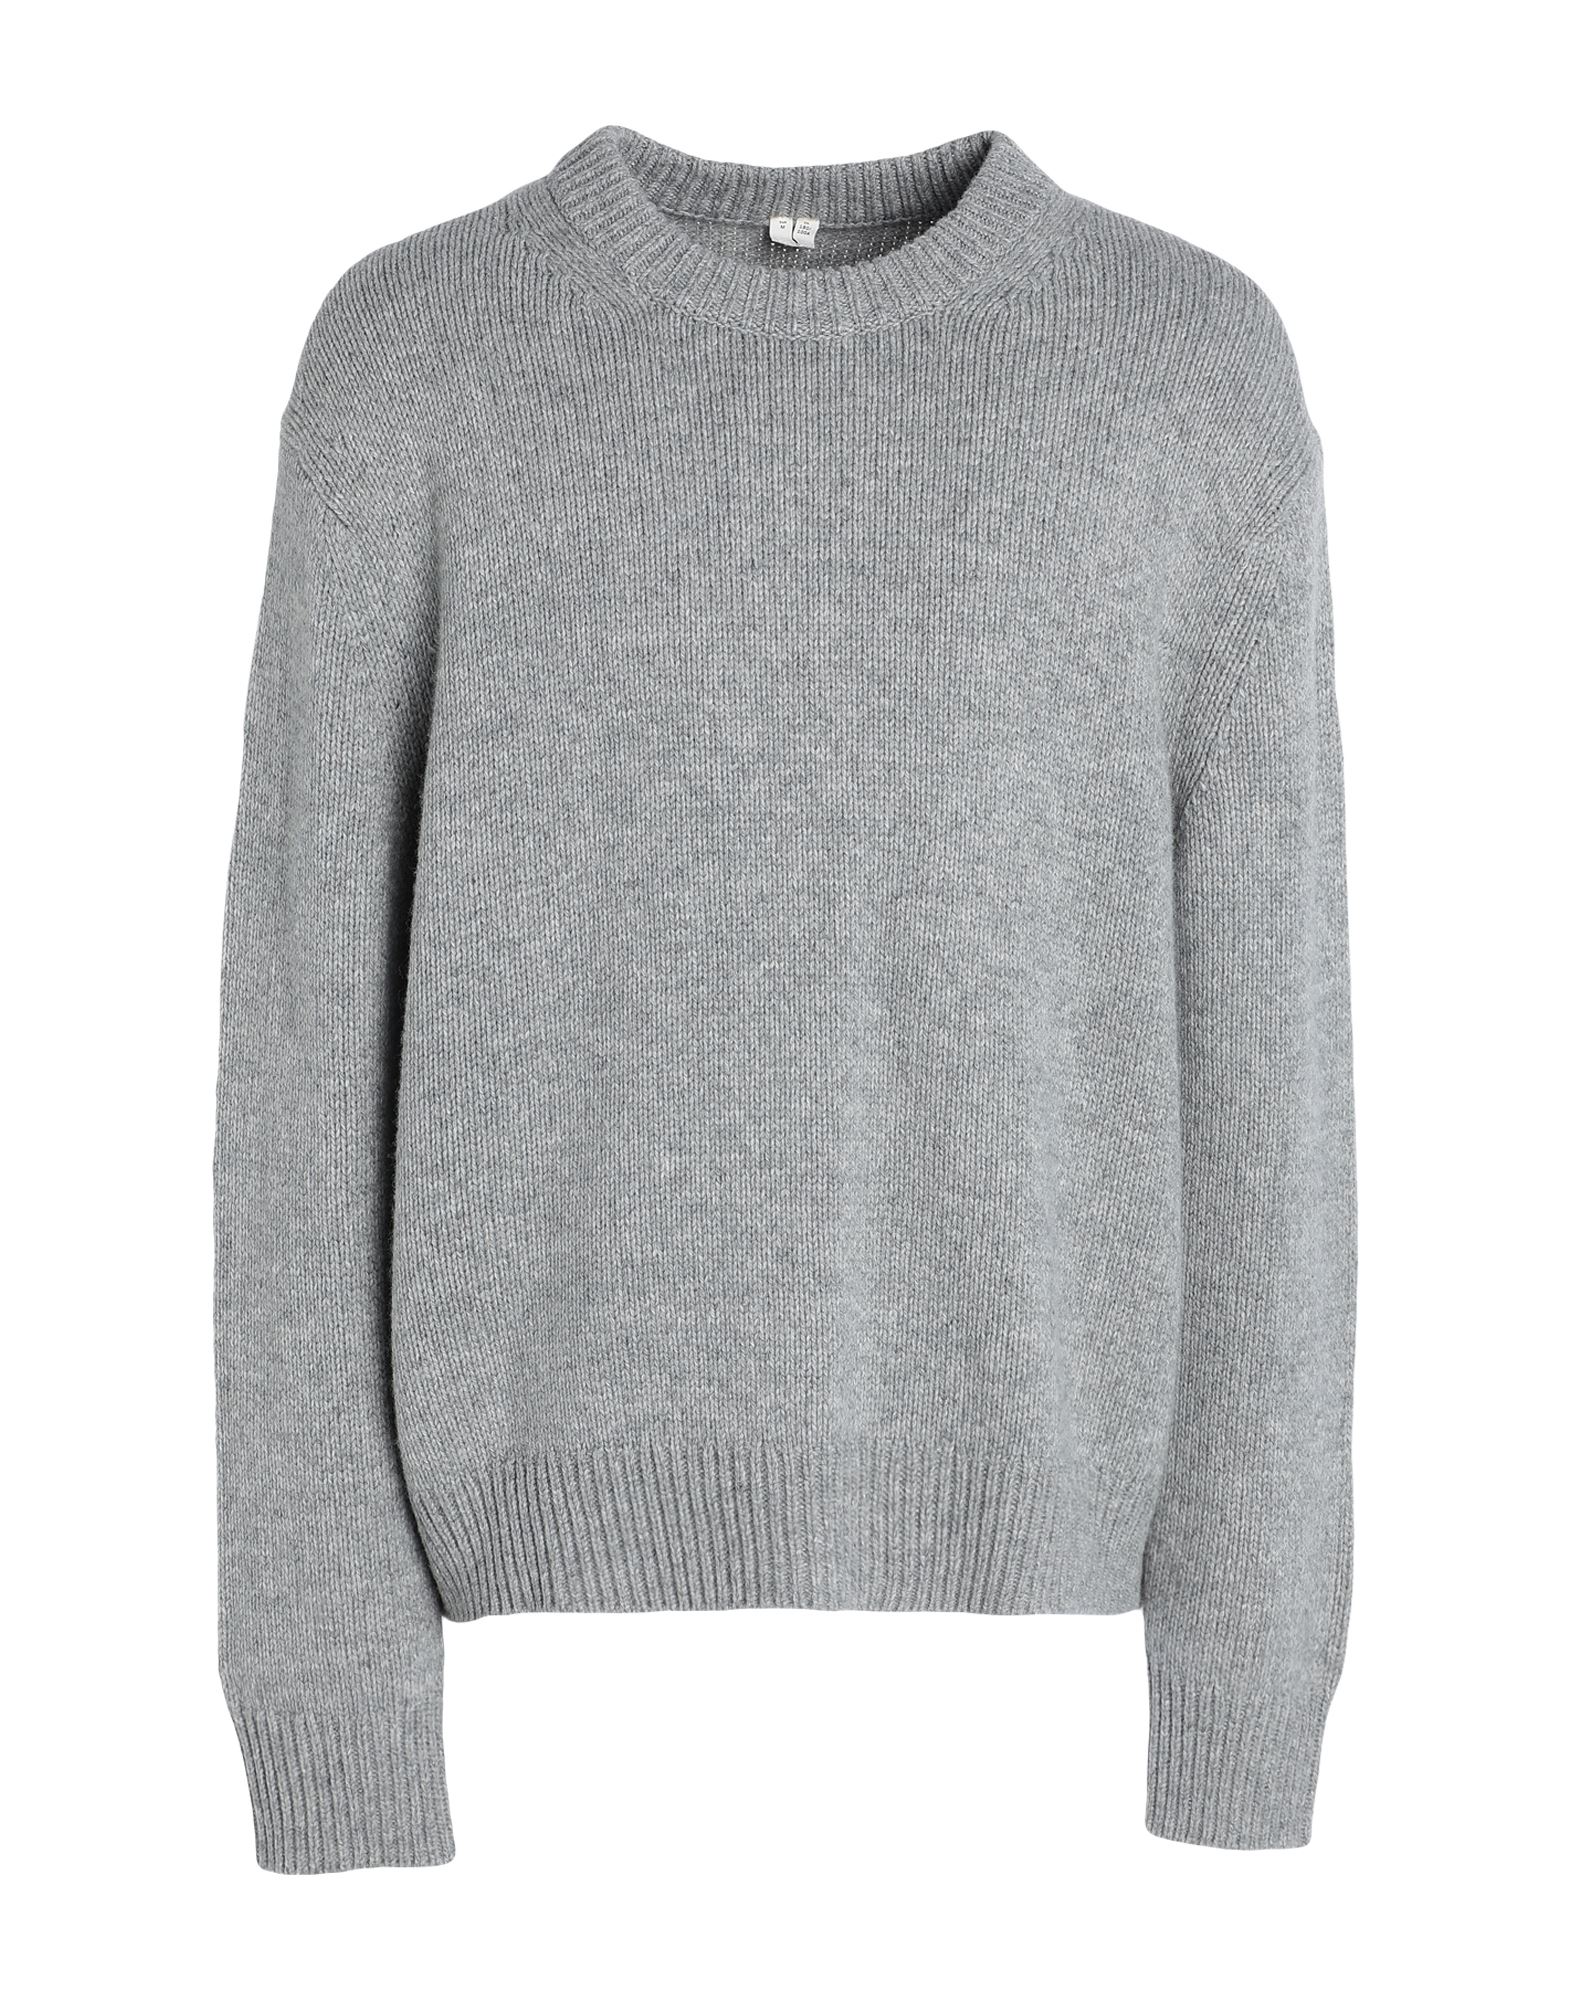 Arket Sweaters In Grey | ModeSens